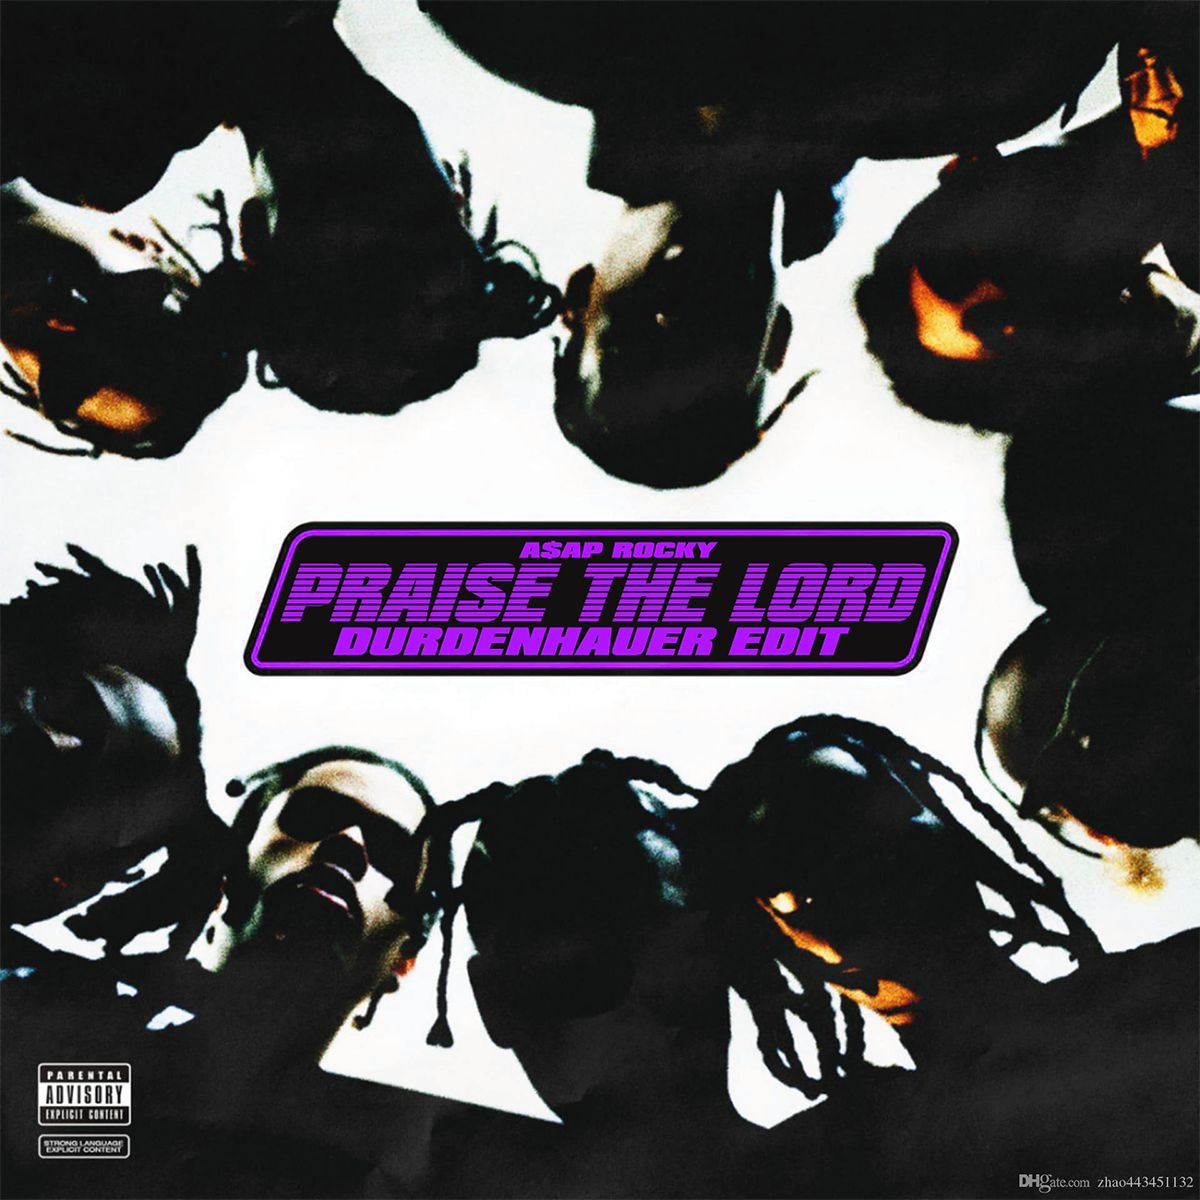 Ներբեռնե A$AP ROCKY - Praise the Lord (DURDENHAUER Edit) [FREE DOWNLOAD]